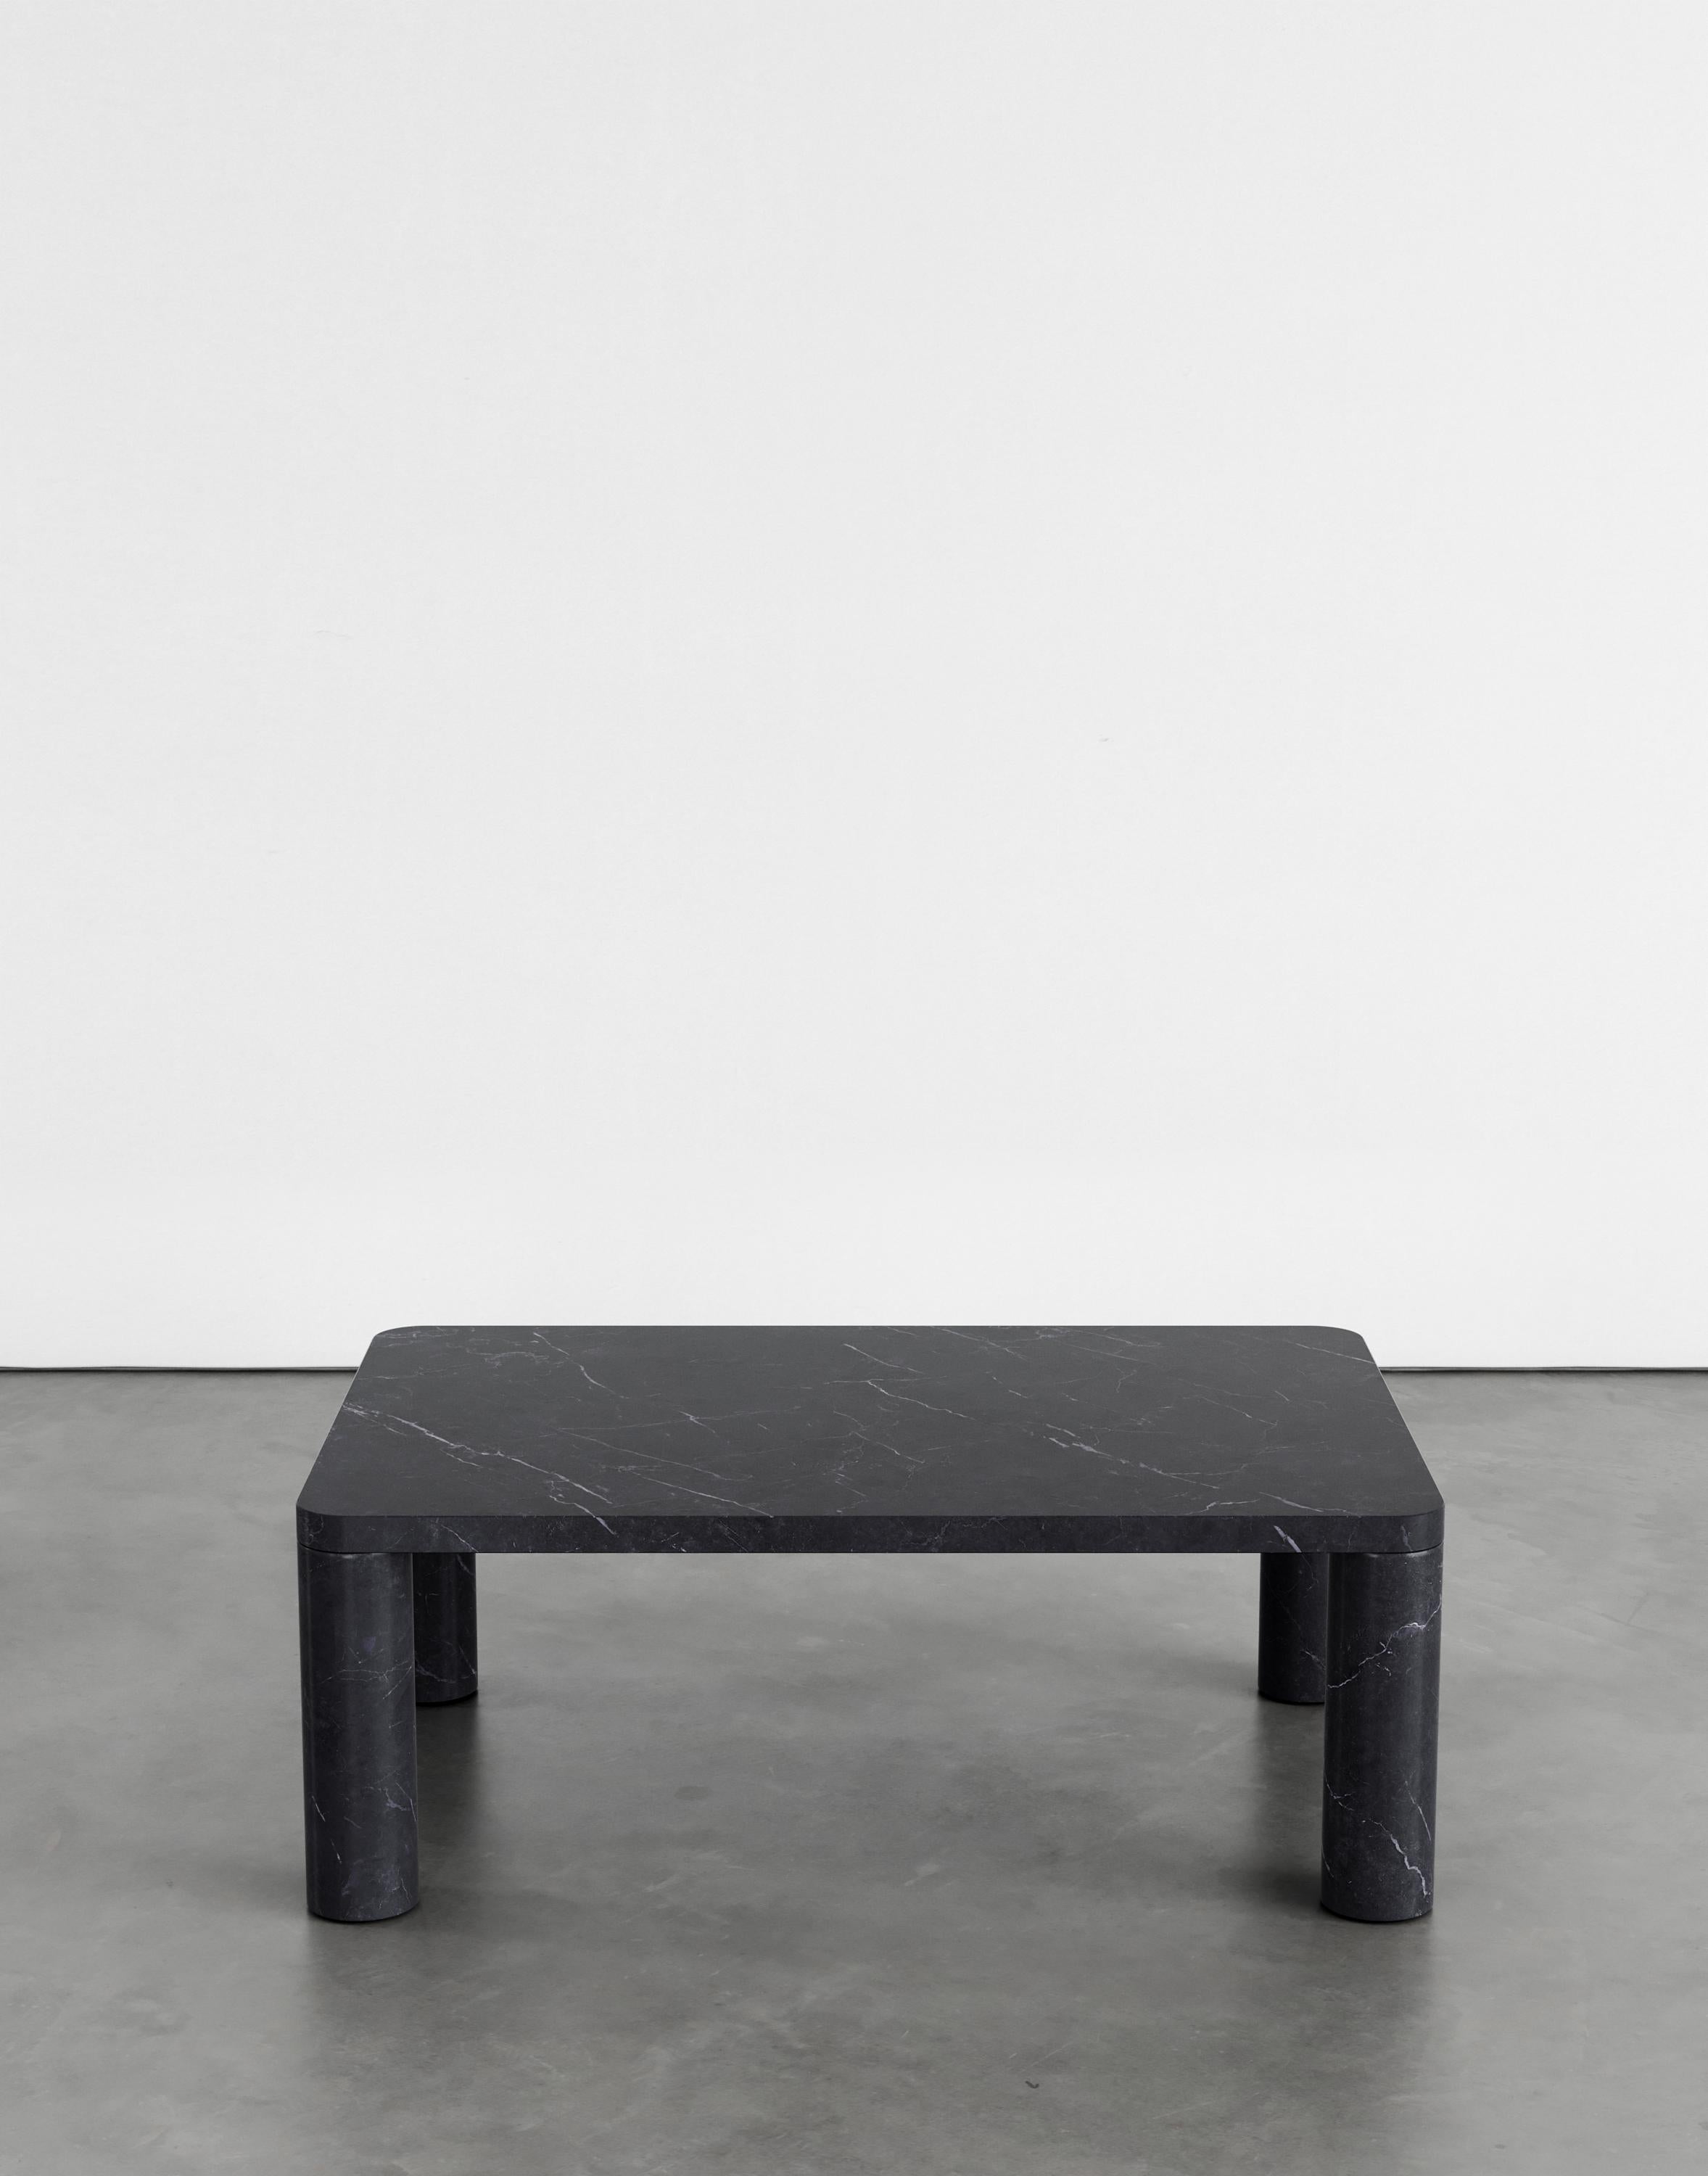 Table basse Nadia 96 par Agglomerati. 
Dimensions : D 60 x L 90 x H 33 cm. 
Matériaux : Marquina noir. Disponible dans d'autres pierres. 

Agglomerati est un studio basé à Londres qui crée des meubles en pierre distinctifs. Fondé en 2019 par le